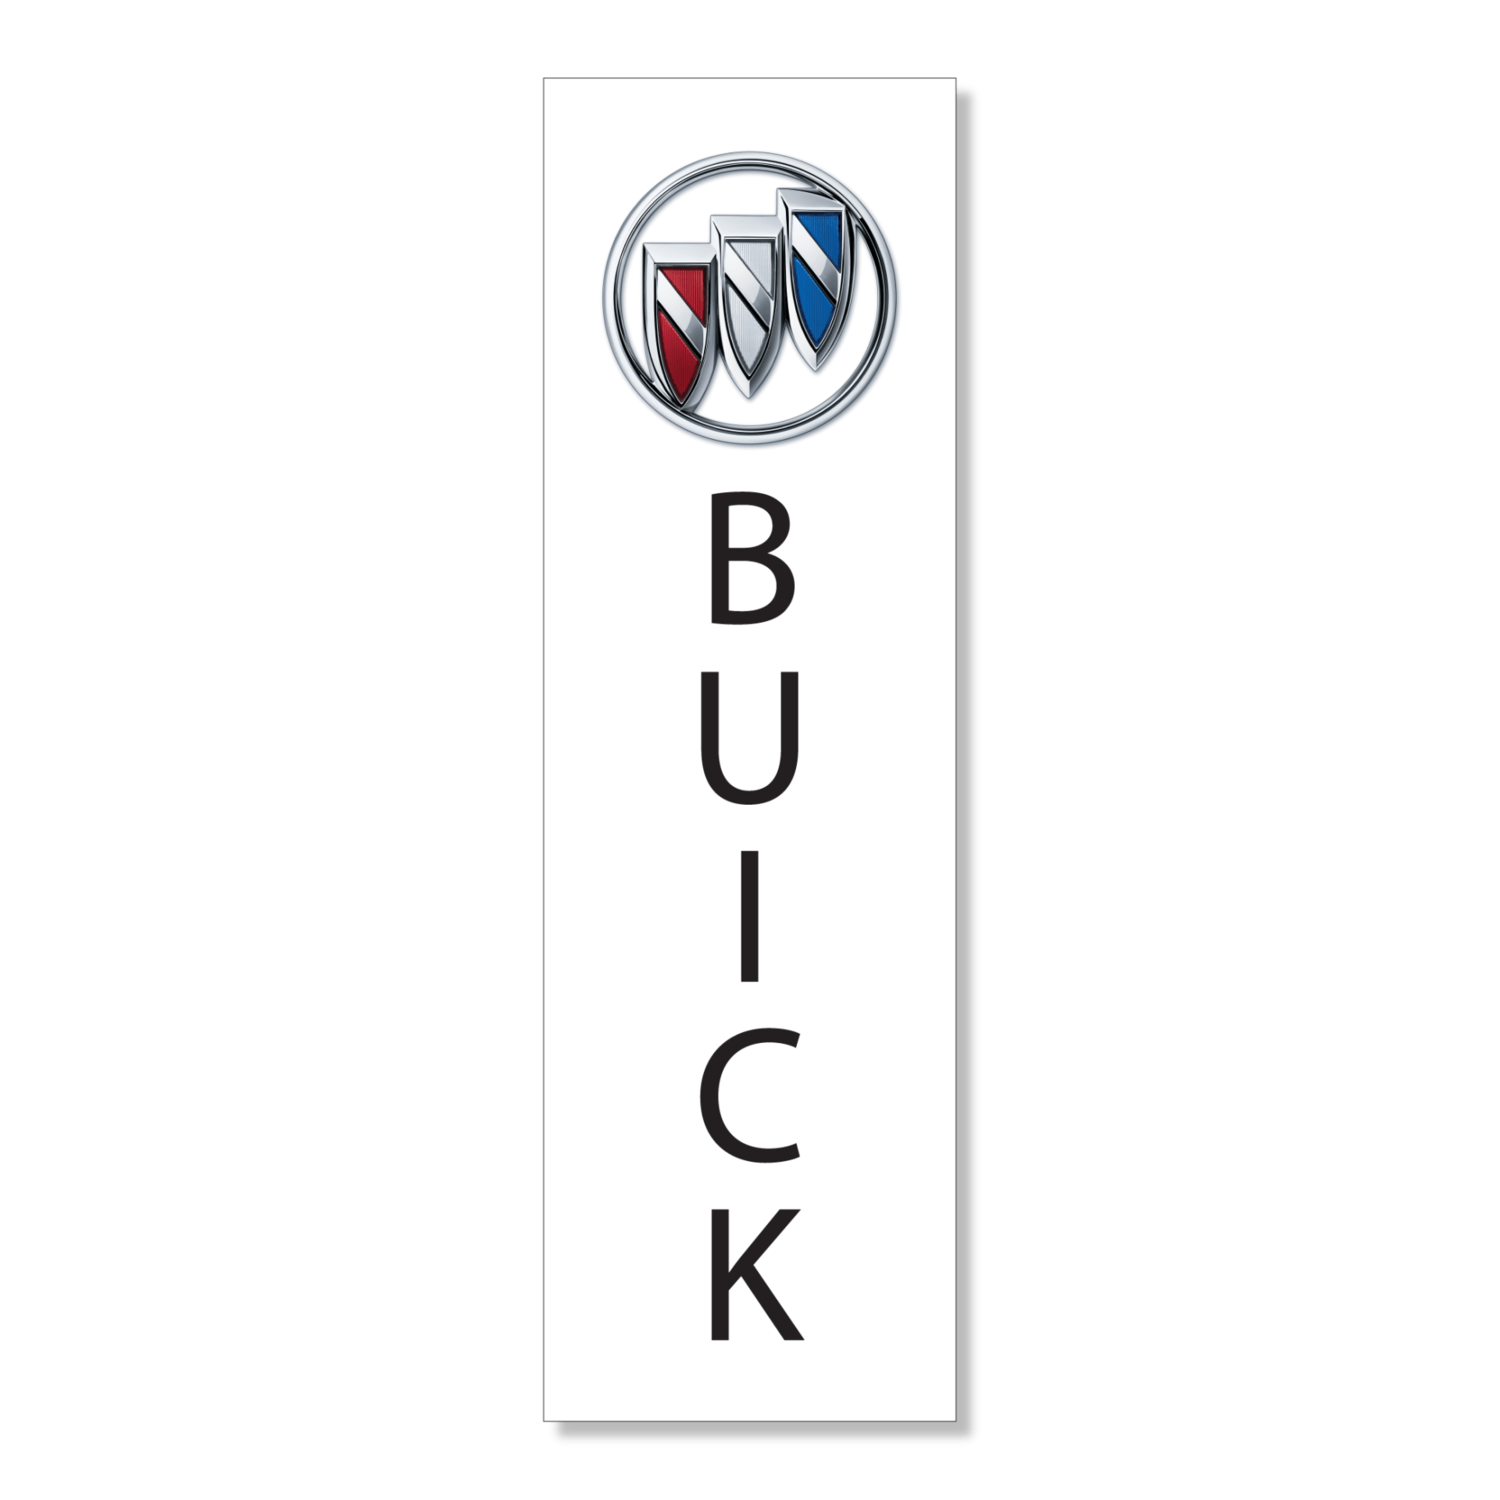 Buick 370